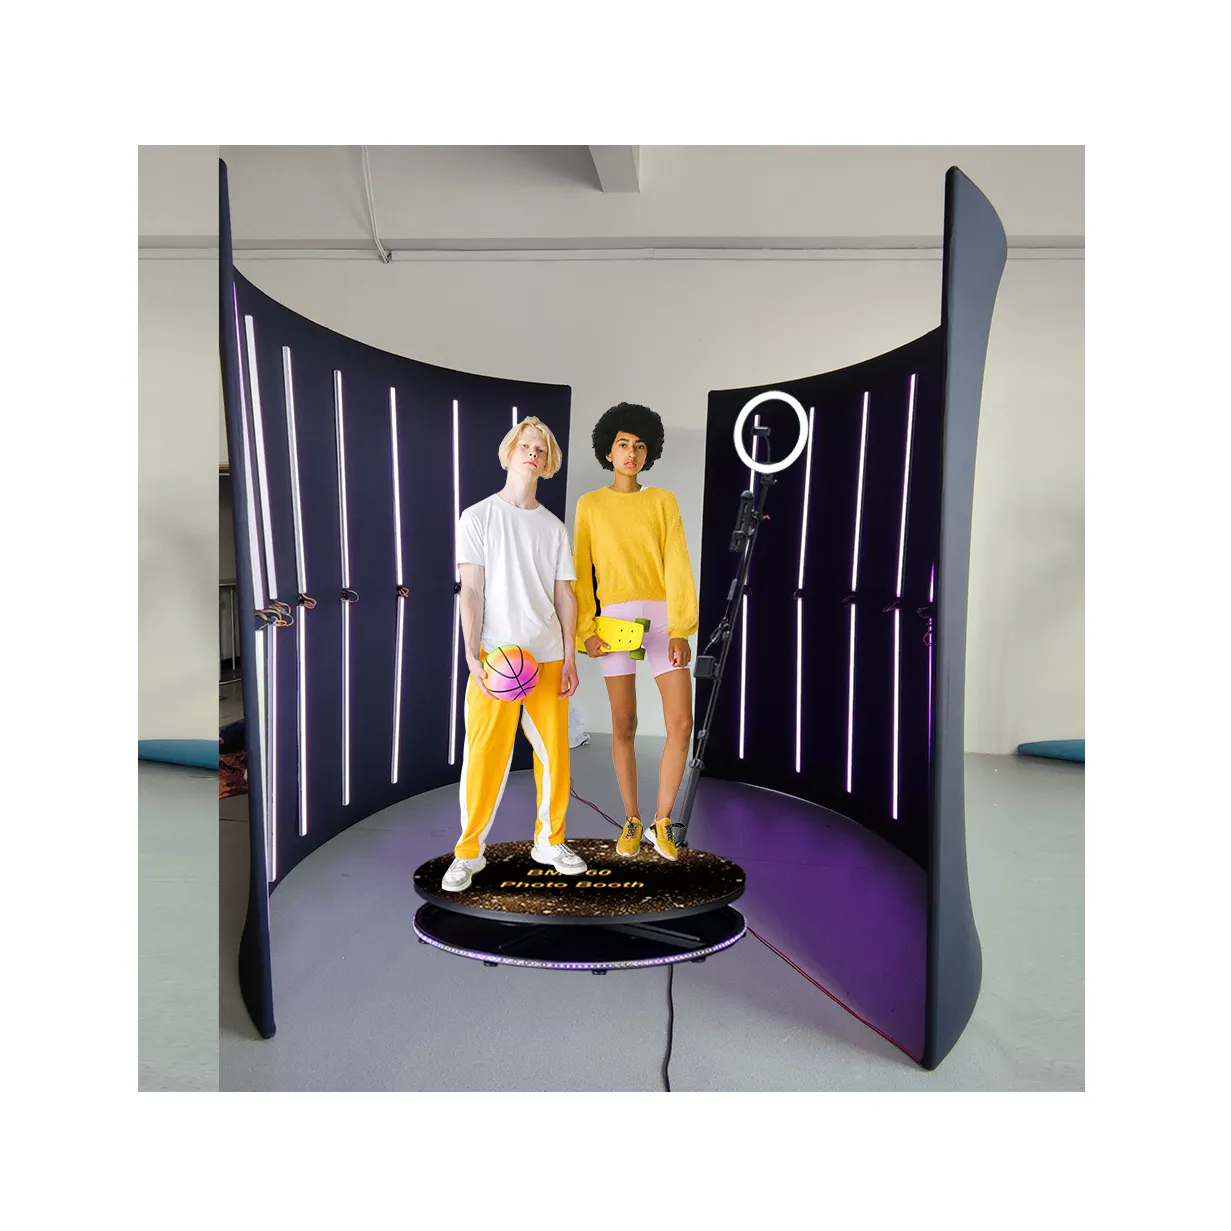 Fotomatón Caja Material Fotomatón Papel de impresión Mini fotomatón 360 grados para fiestas de boda